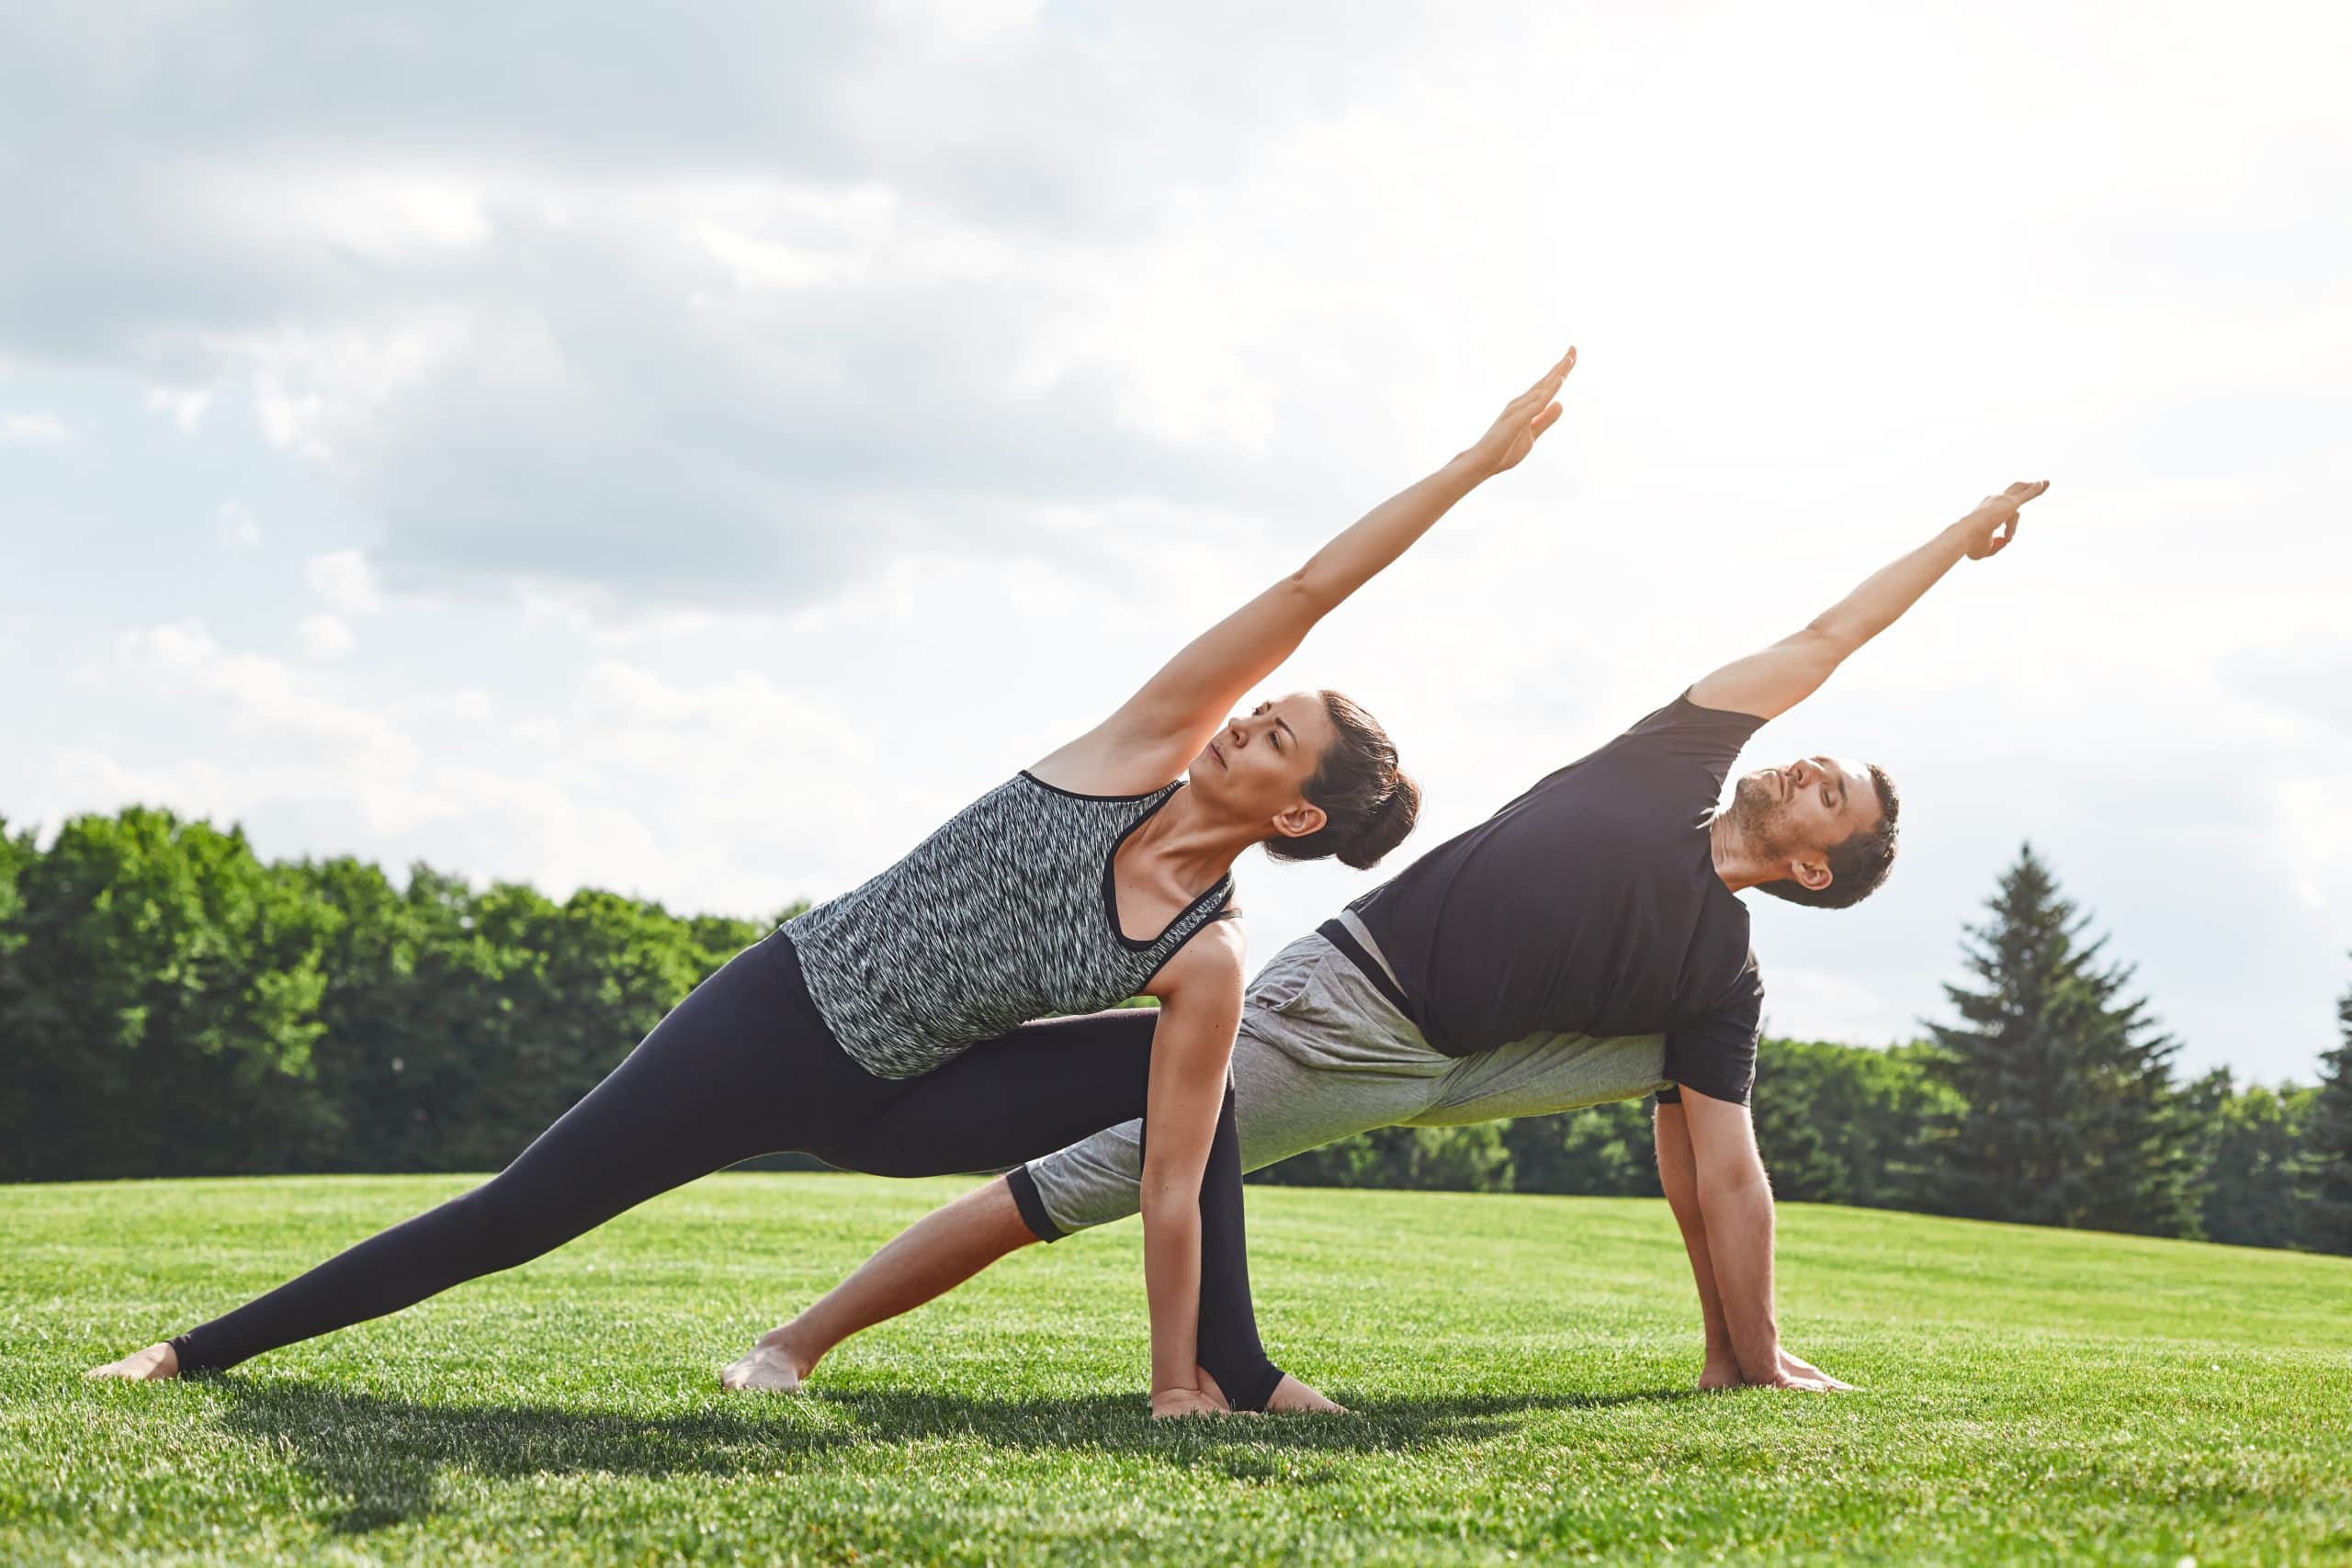 acro yoga poses 2 people｜TikTok Search